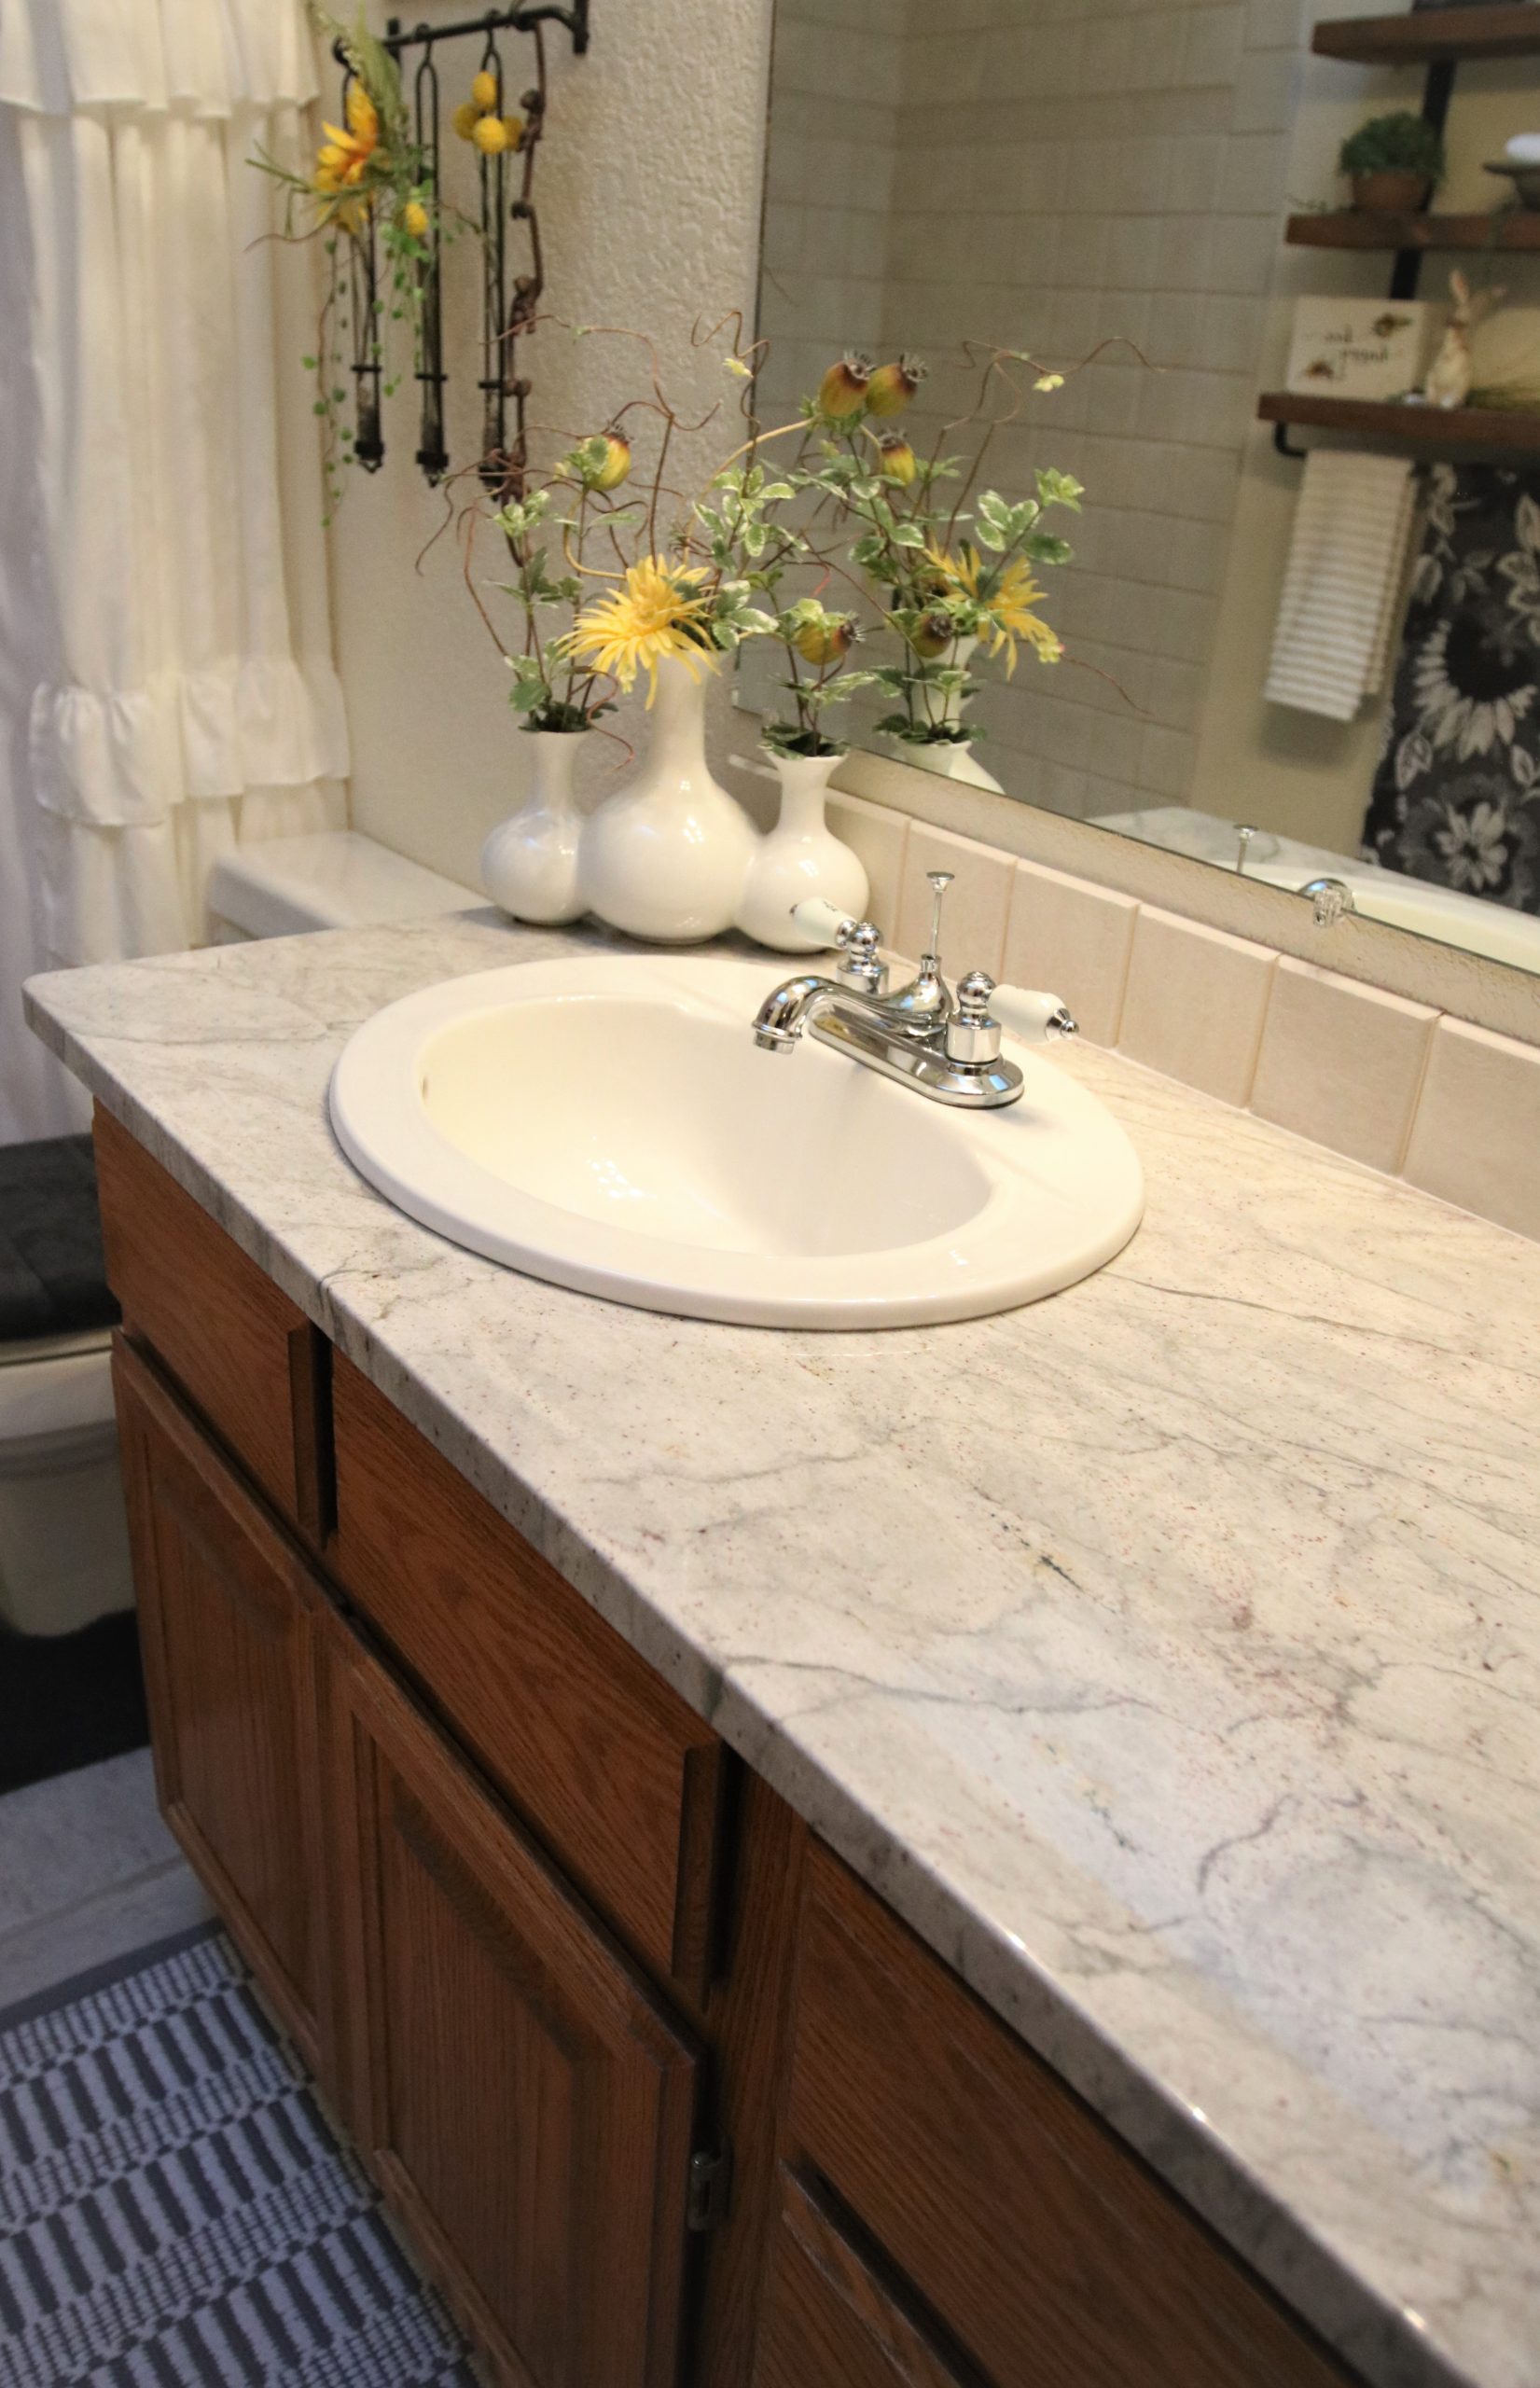 Client Bathroom Remodel 107 Refresh Vanity Countertops